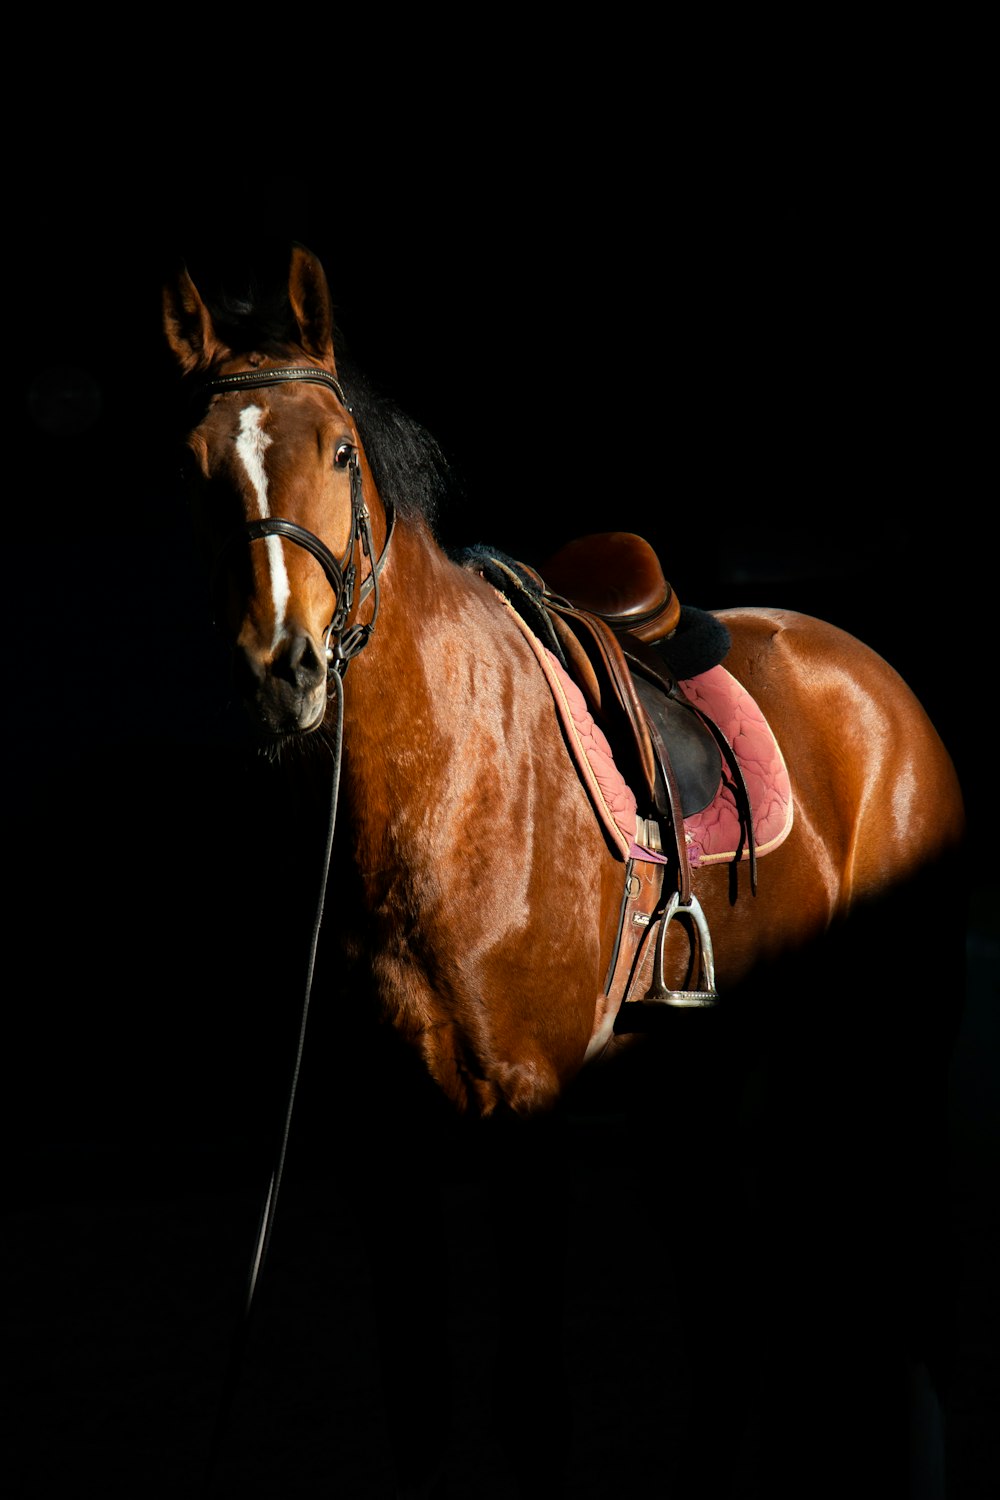 Un caballo marrón parado en la oscuridad con una silla de montar